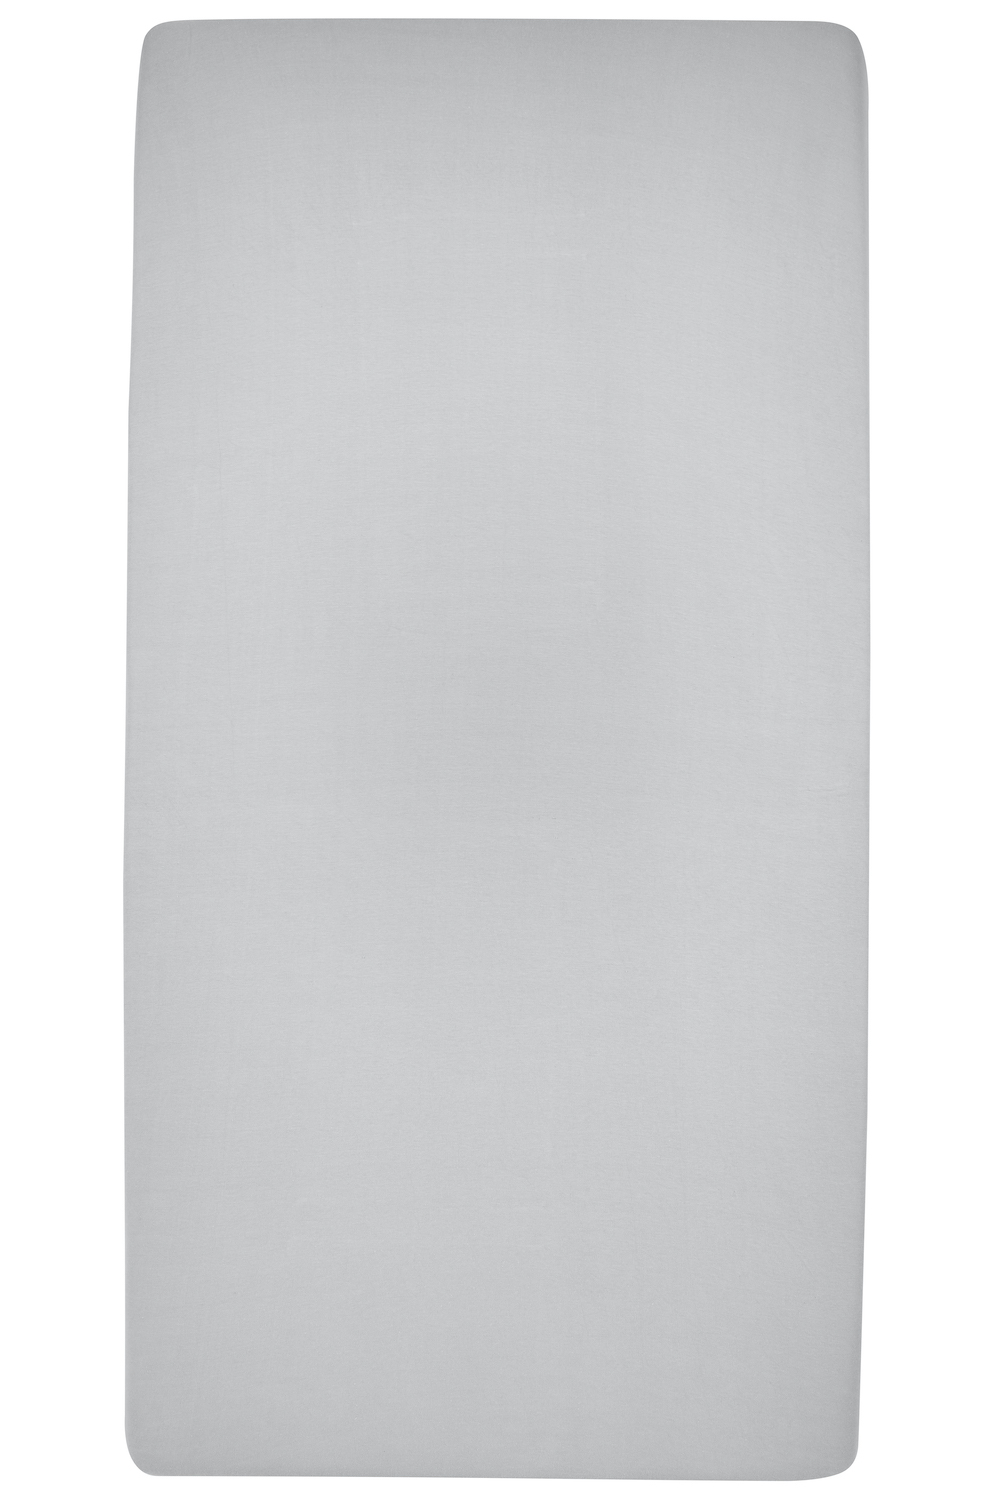 Hoeslaken tweepersoons Uni - light grey - 180x200cm